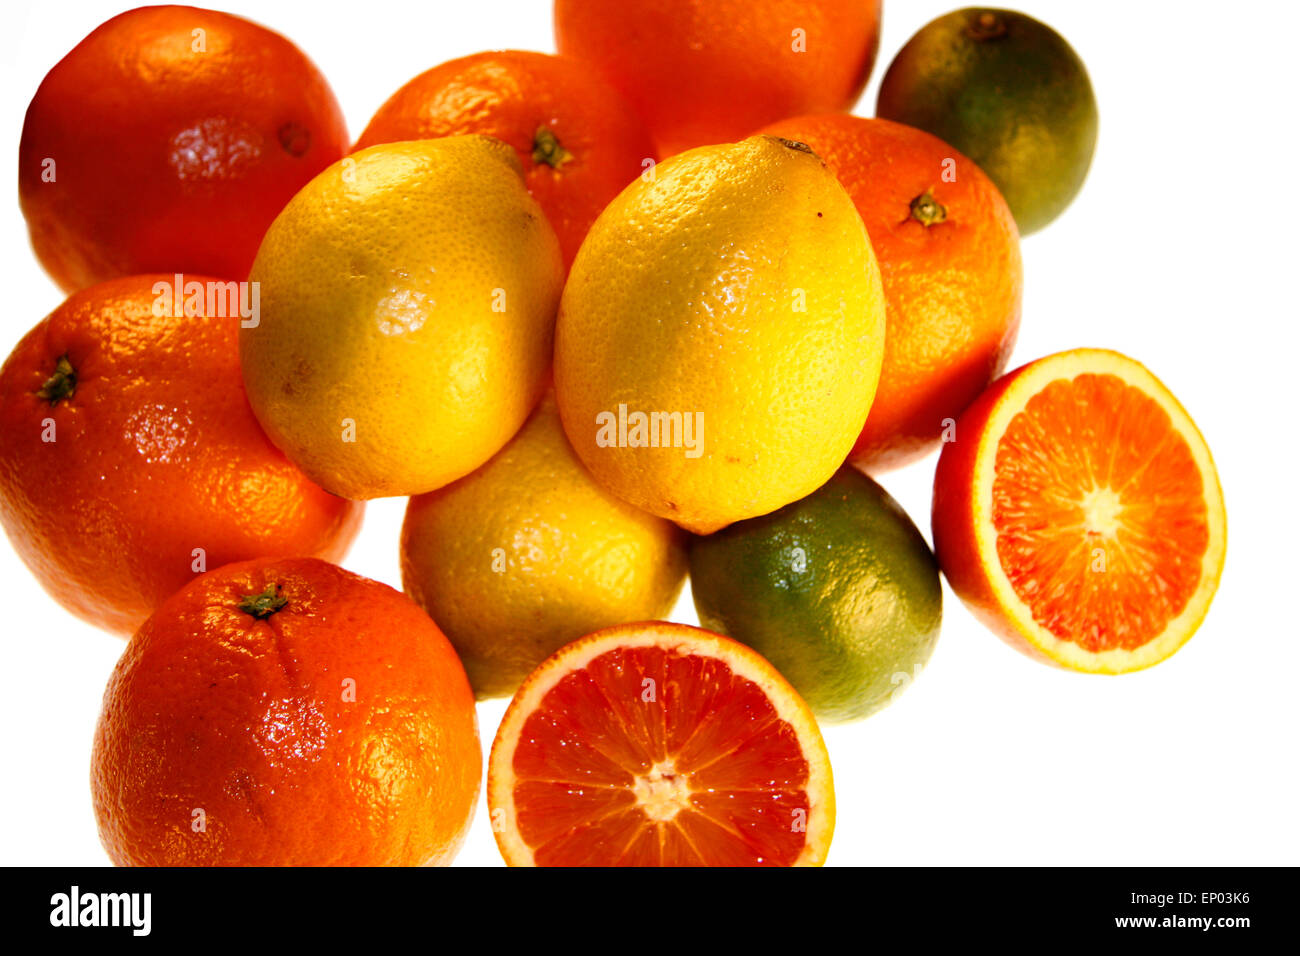 Suedfruechte: Blutorange, Zitrone, Orange, Limette - Symbolbild Nahrungsmittel. Stock Photo